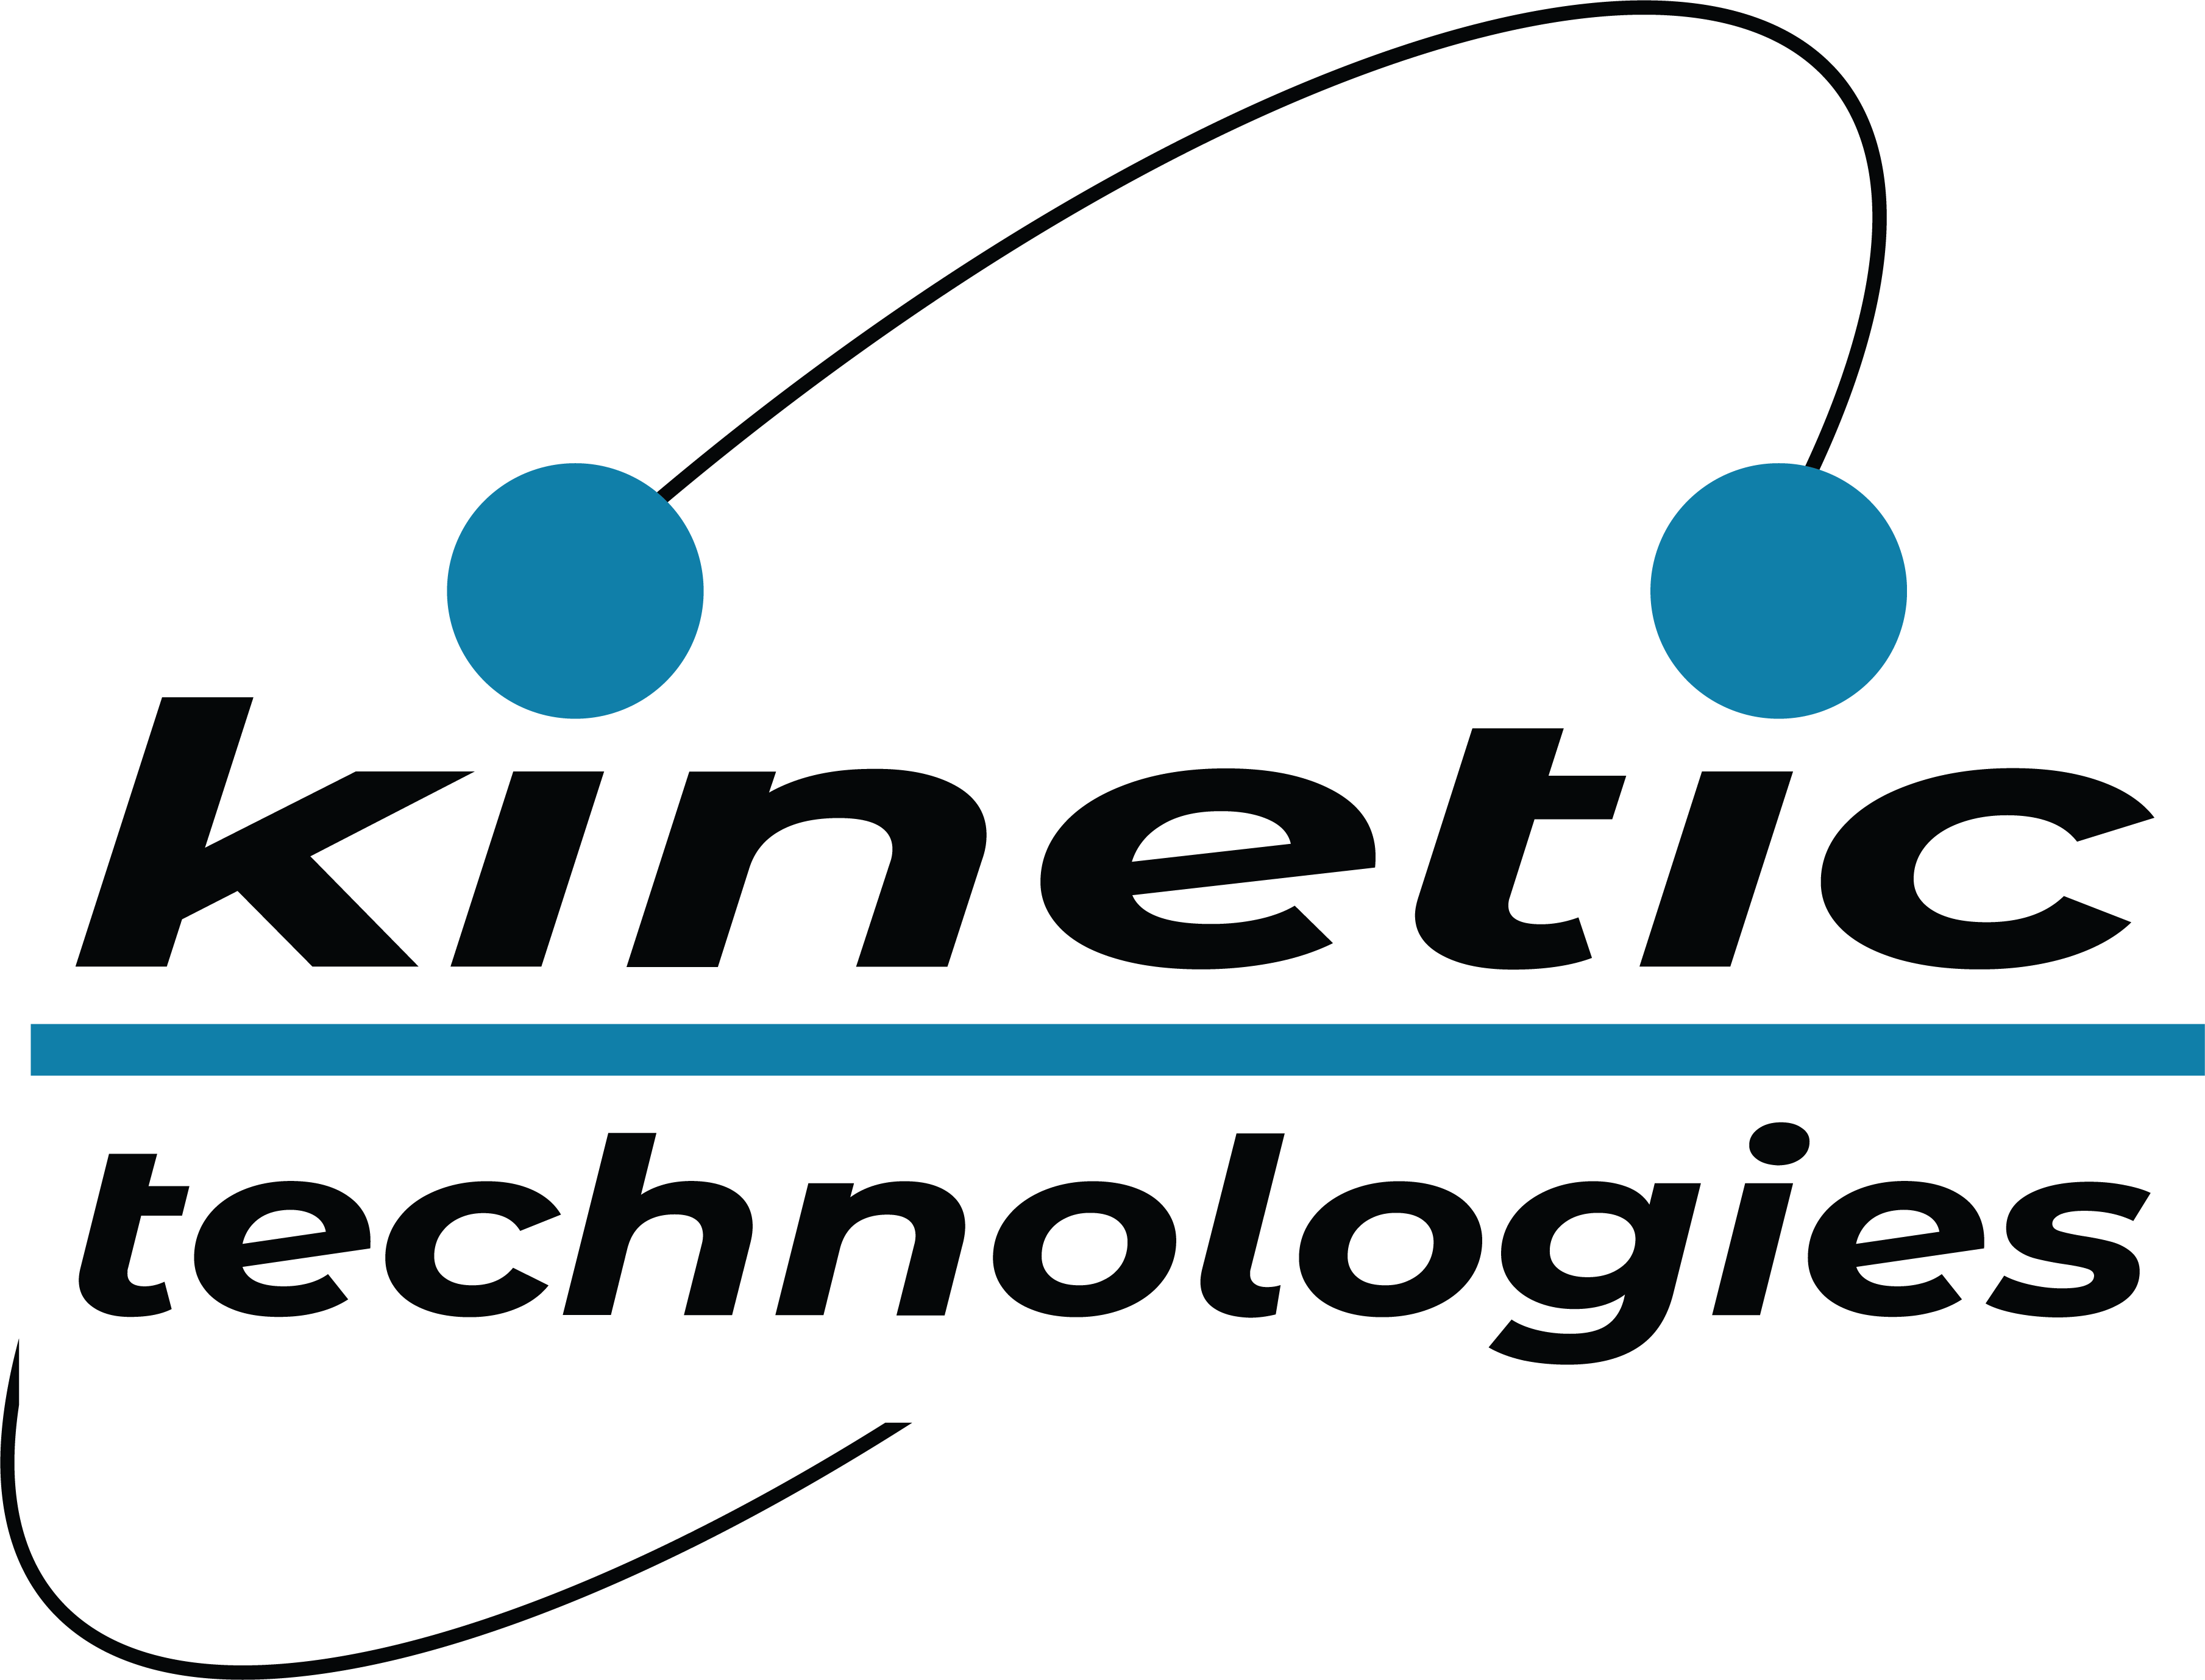 Kinetic Technologies